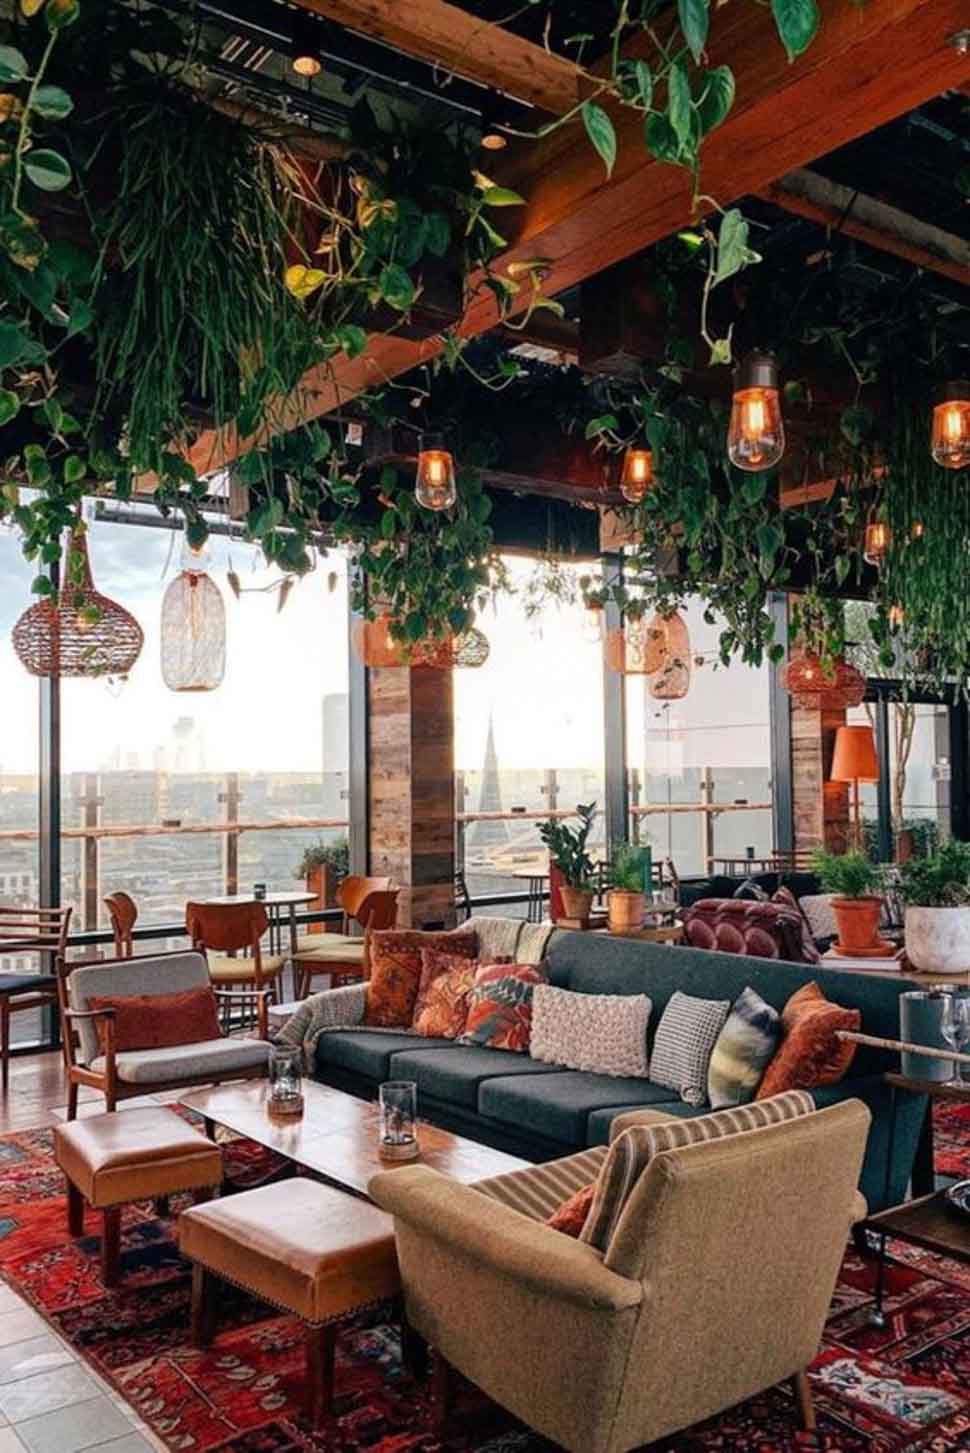 Thiết kế quán cafe sân thượng theo phong cách vintage ấm áp, bình yên